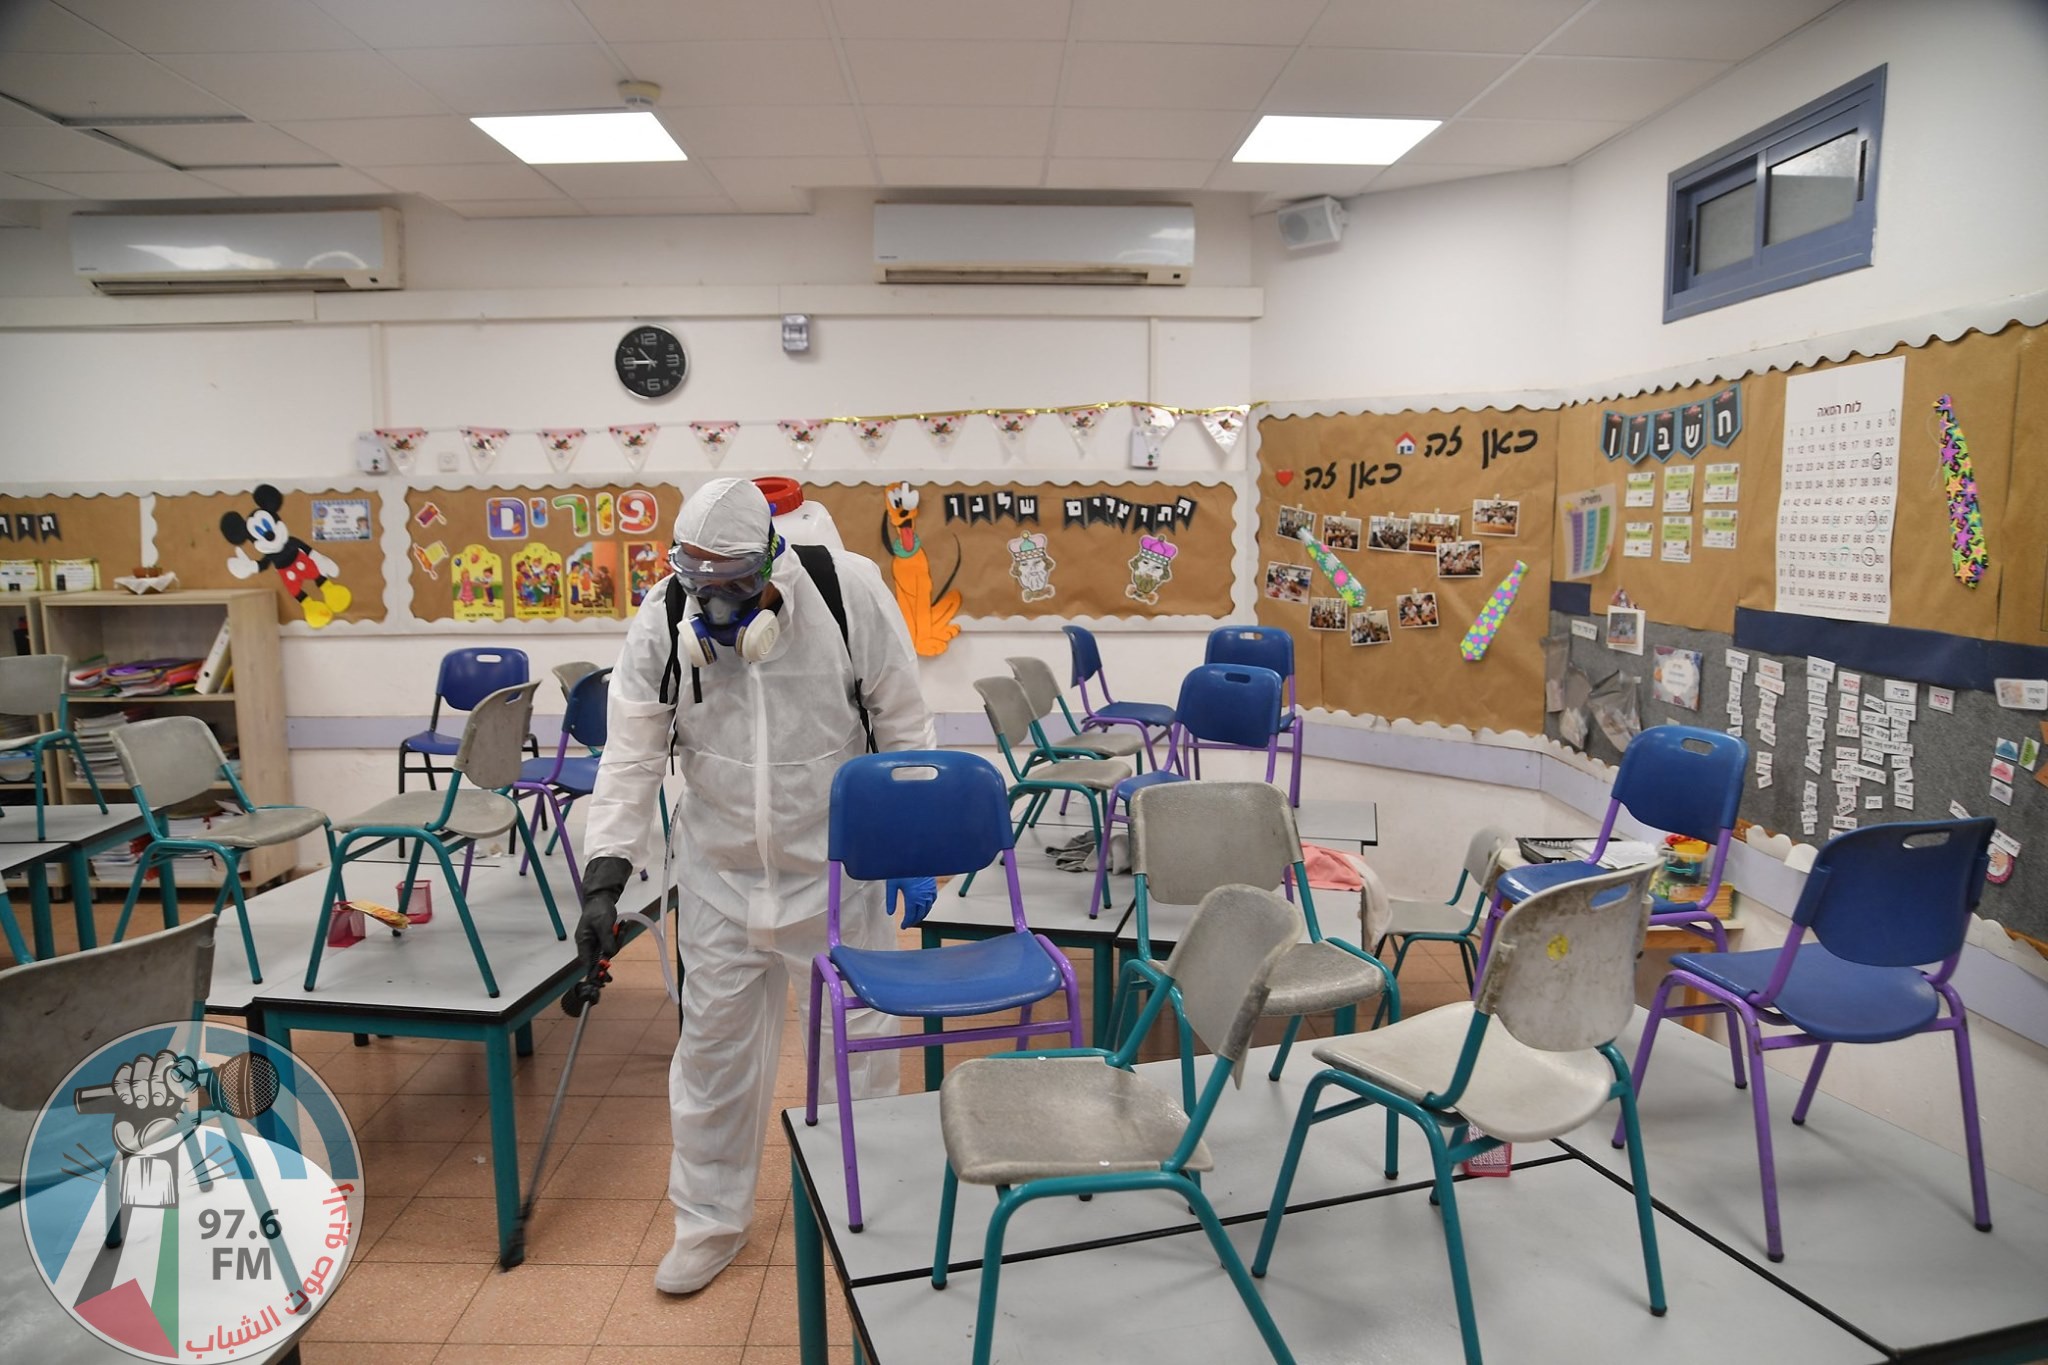 انتشار واسع لـ كورونا في المدارس الإسرائيليّة وأوساط جيش الاحتلال